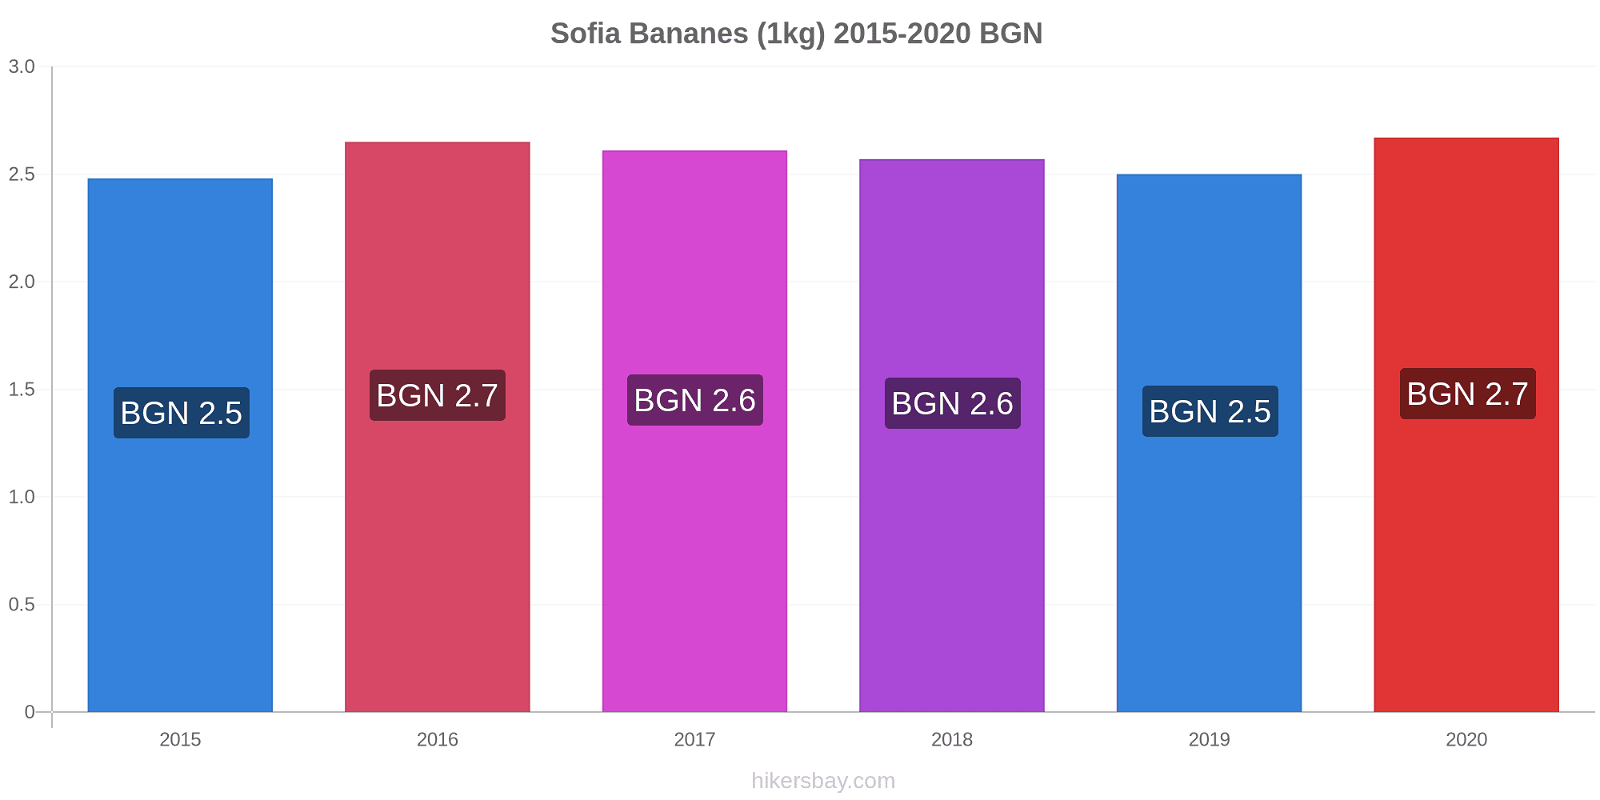 Sofia changements de prix Bananes (1kg) hikersbay.com